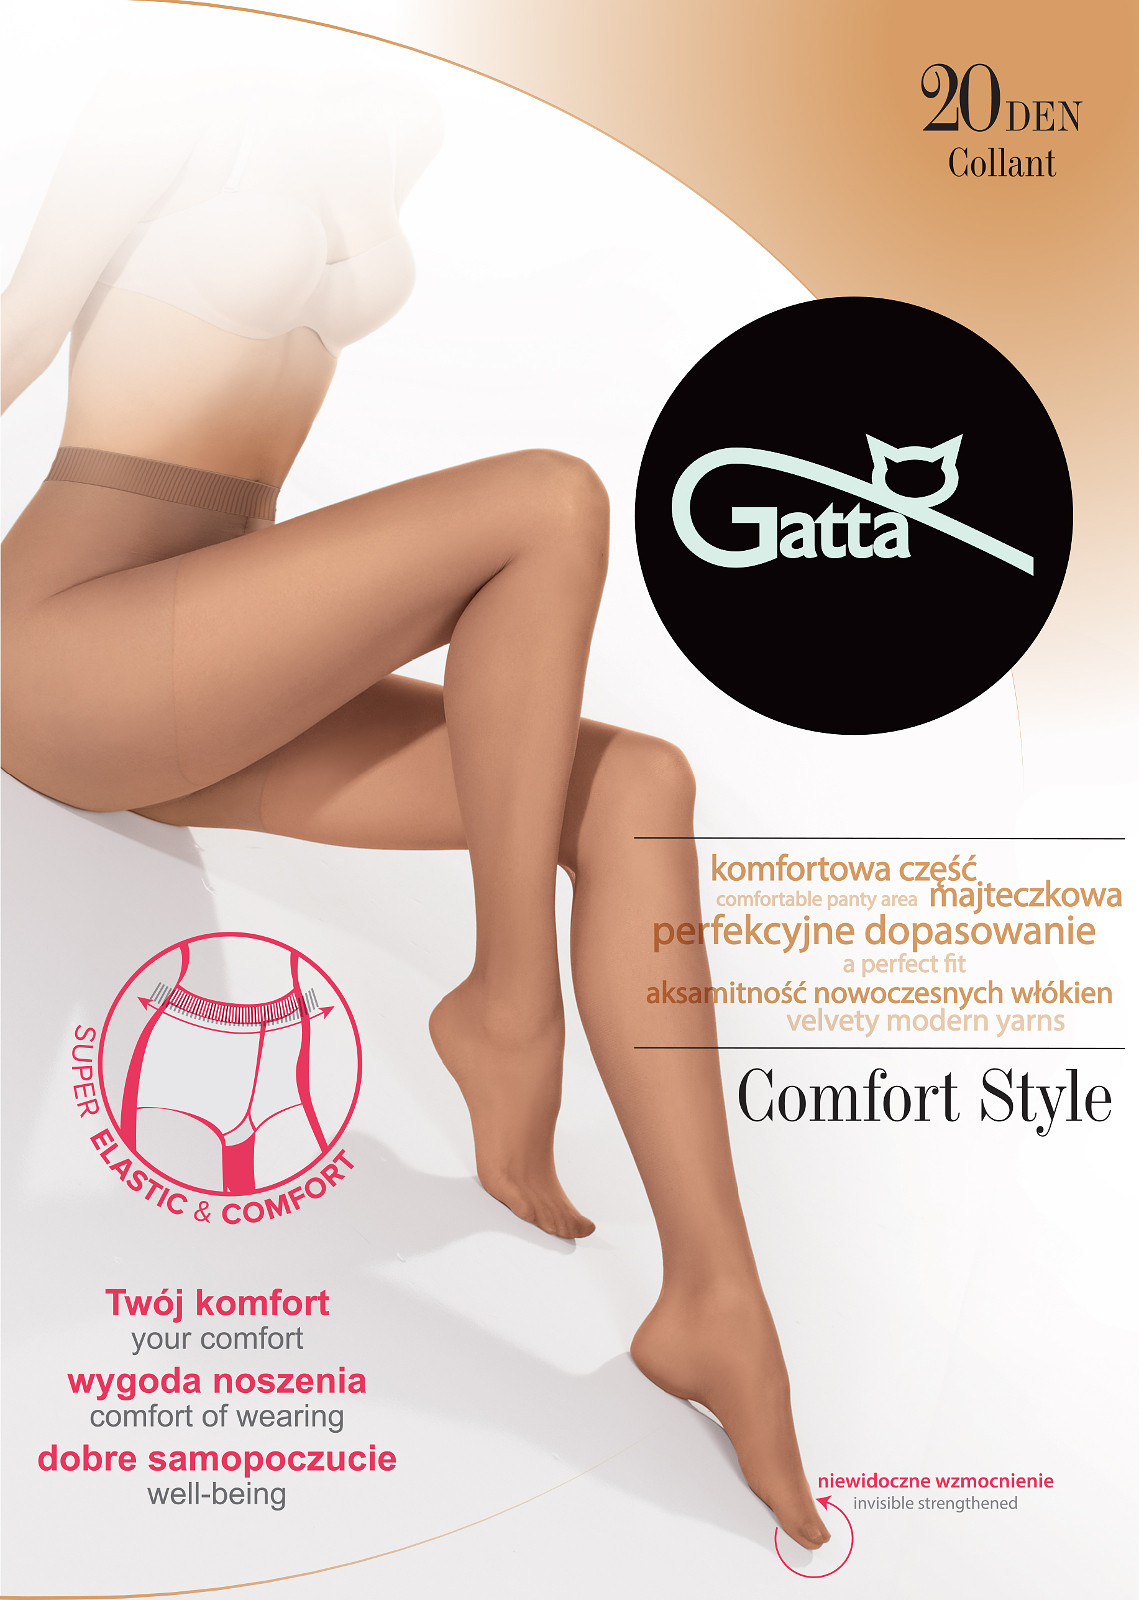 Dámské punčochové kalhoty Gatta Comfort Style 20 den 2-4 londýnský úřad pro digitální komunikaci (londra/odc).šedá 4-L